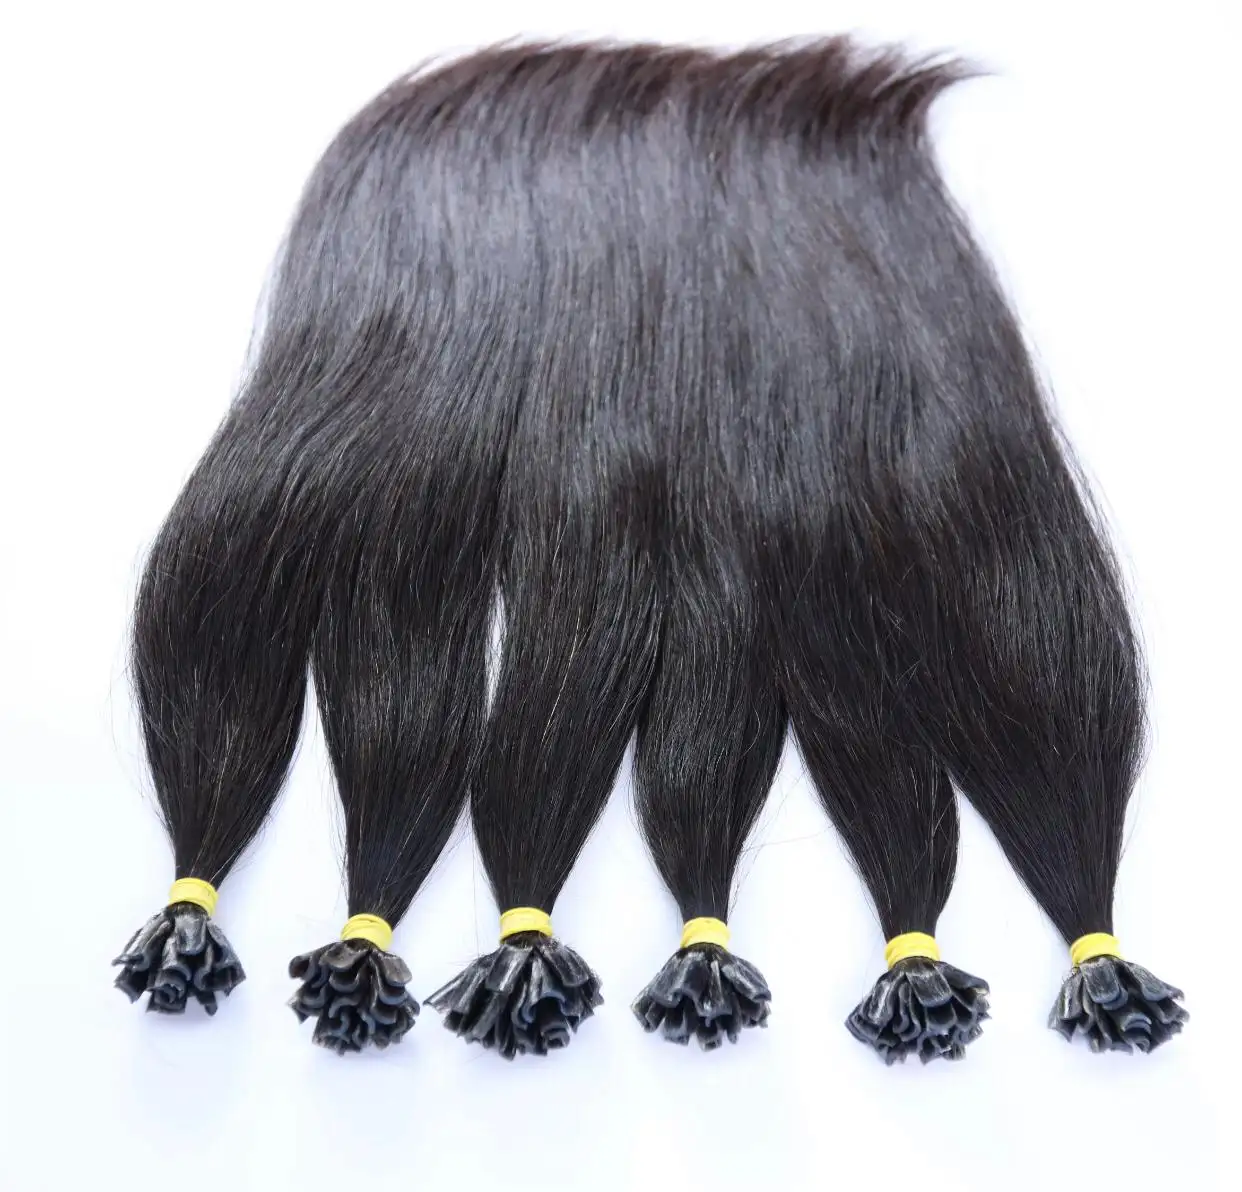 Волосы KING Индия Топ рейтинг бразильские человеческие волосы пучки необработанные натуральные волосы экспортер на новогодней распродаже